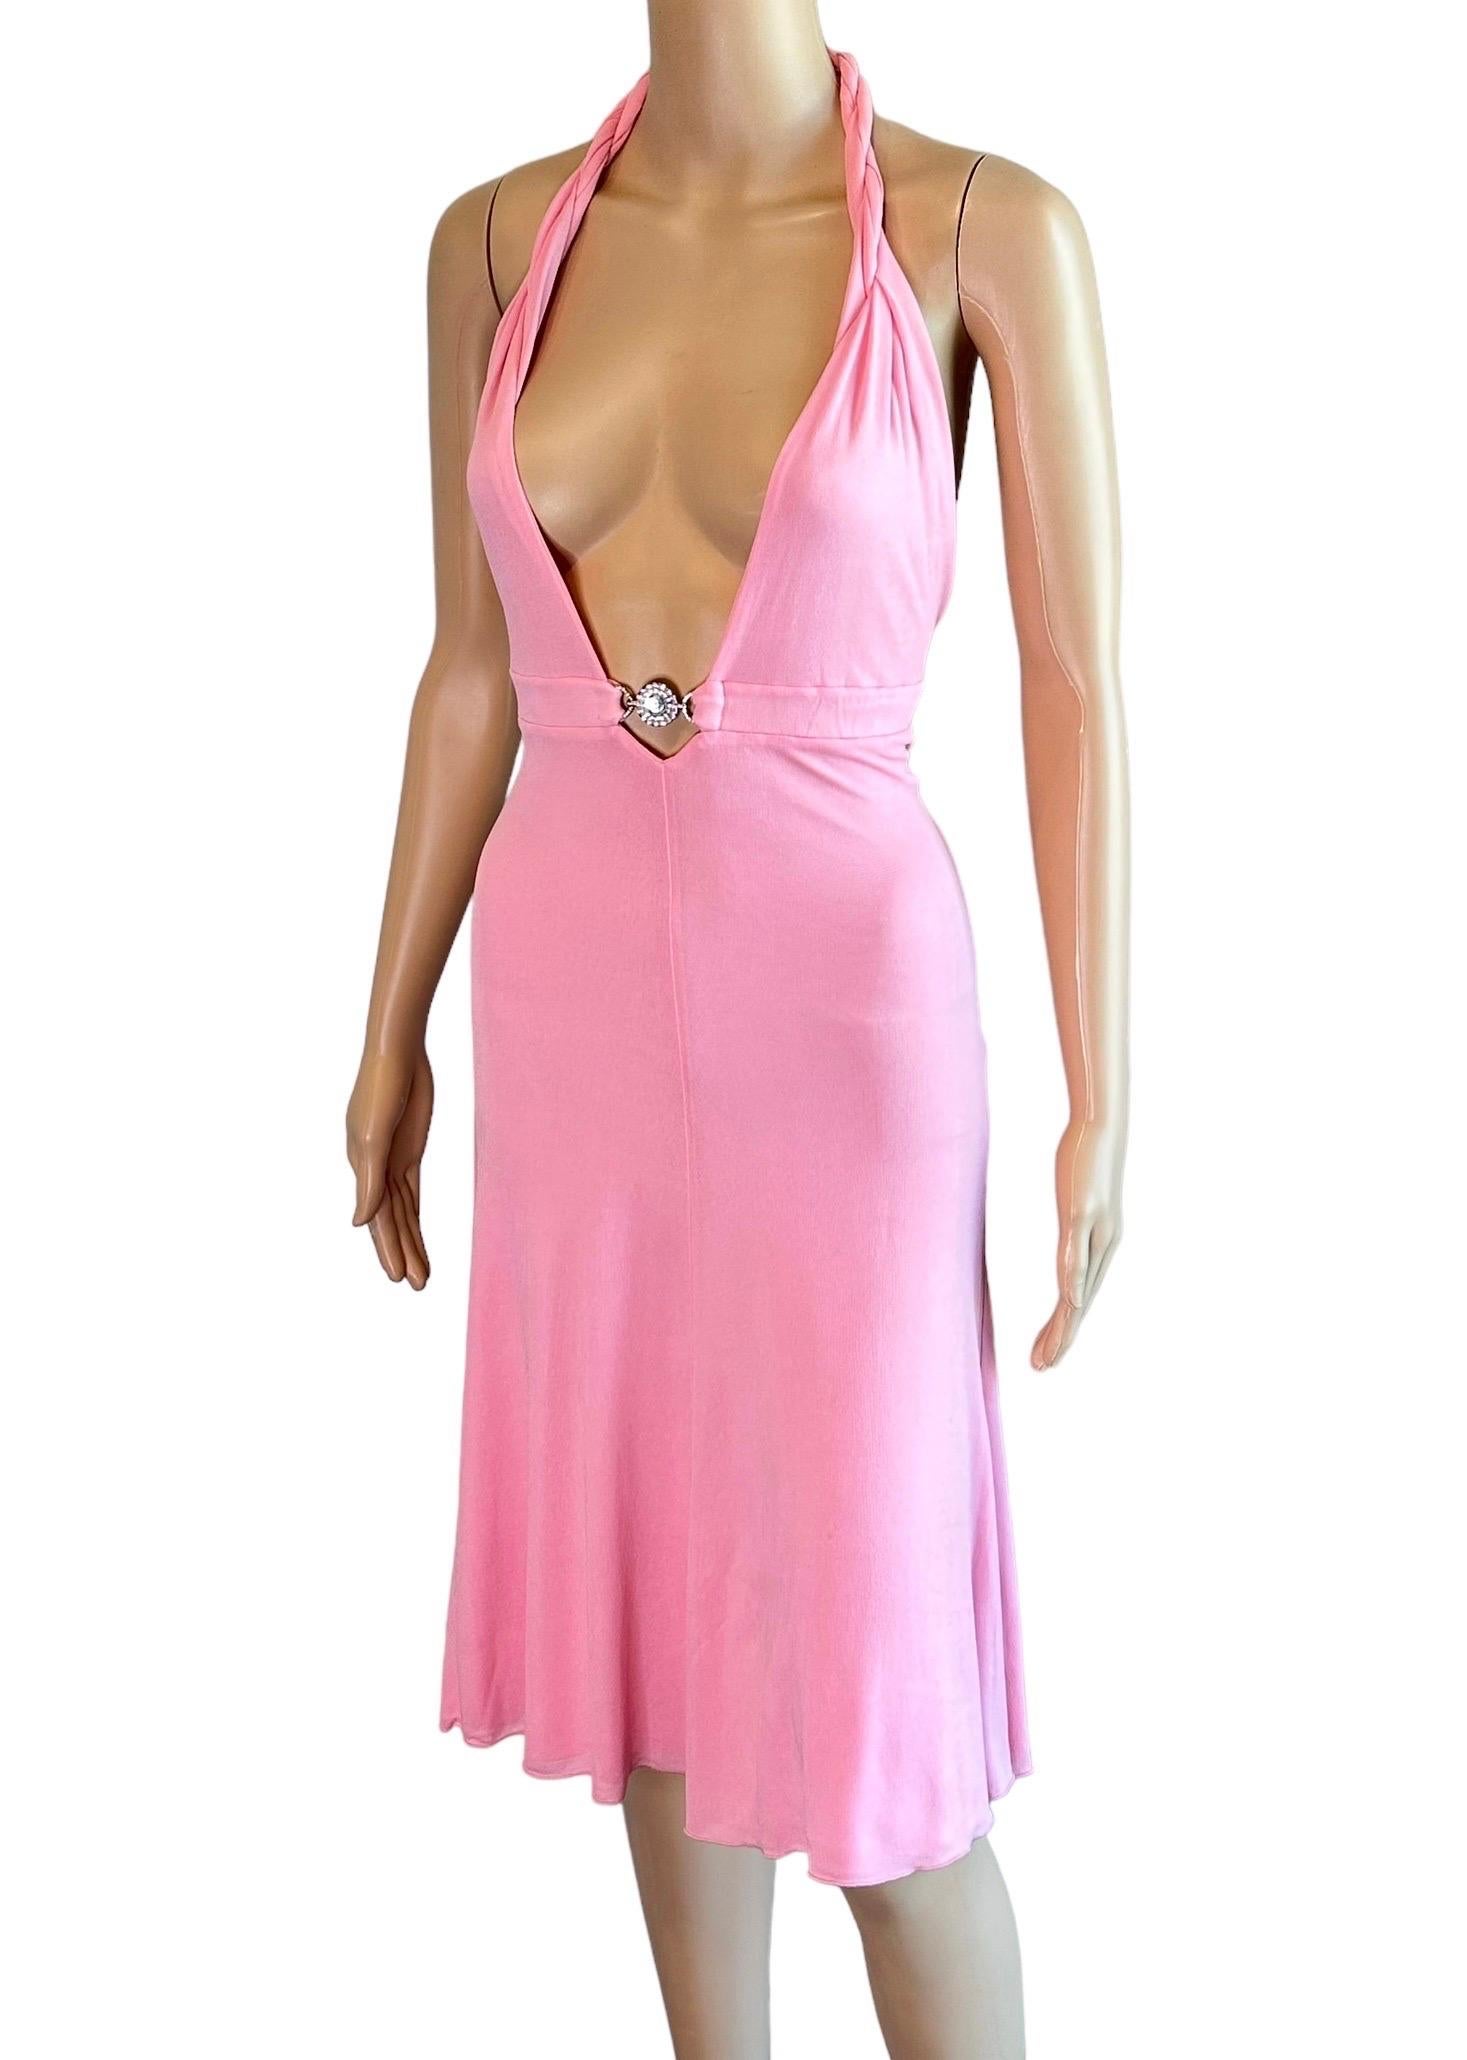 Versace S/S 2007 Crystal Logo Plunging Neckline Backless Halter Pink Dress For Sale 1